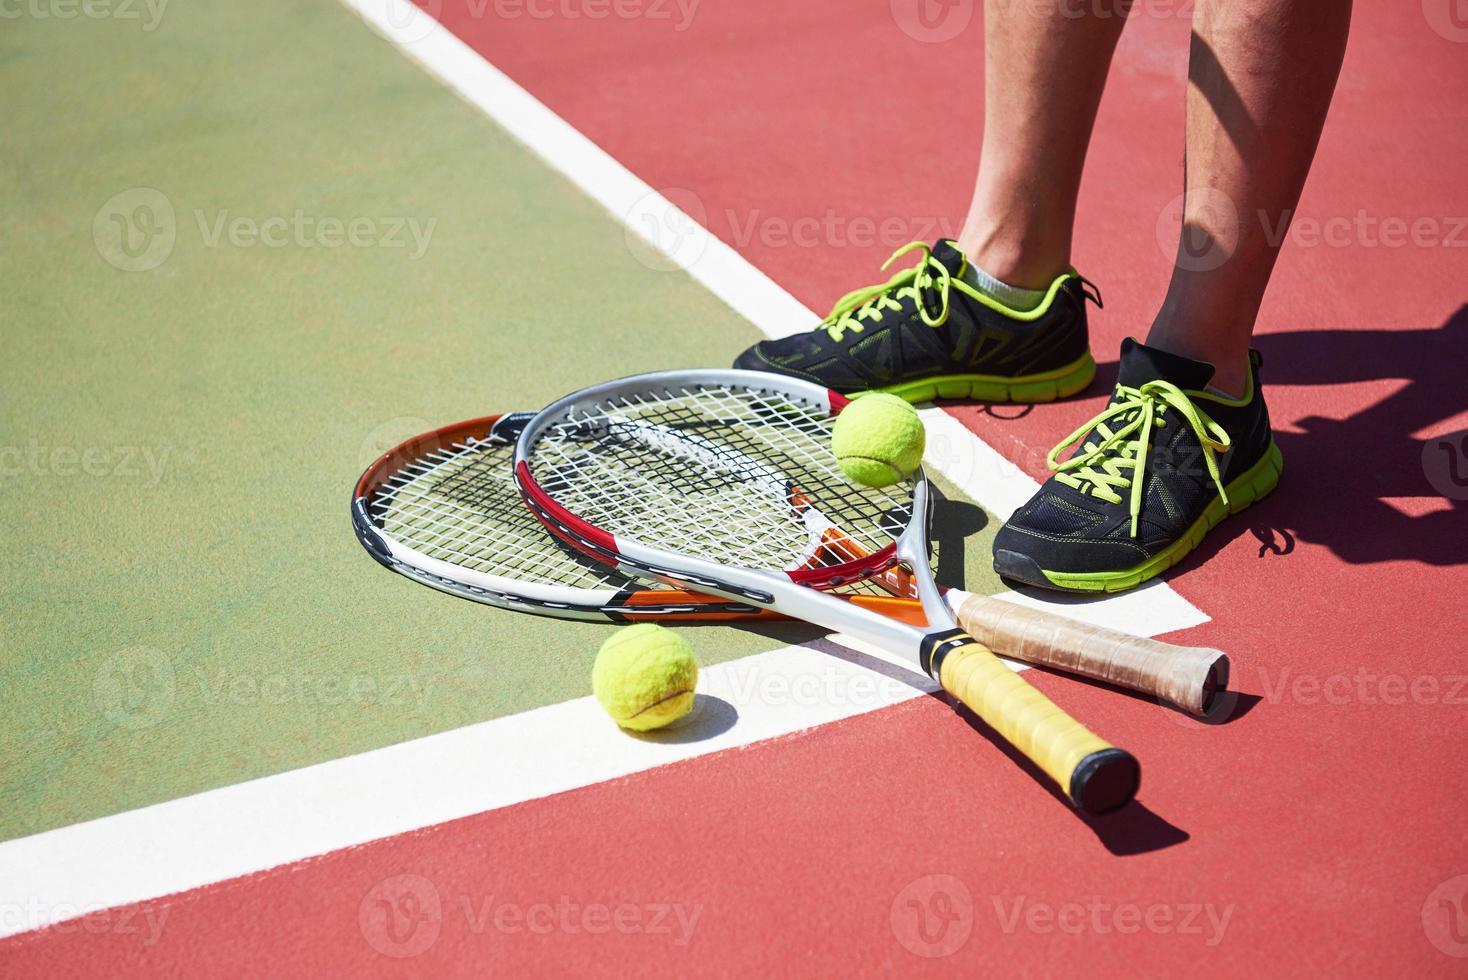 una raqueta de tenis y una pelota de tenis nueva en una cancha de tenis recién pintada foto